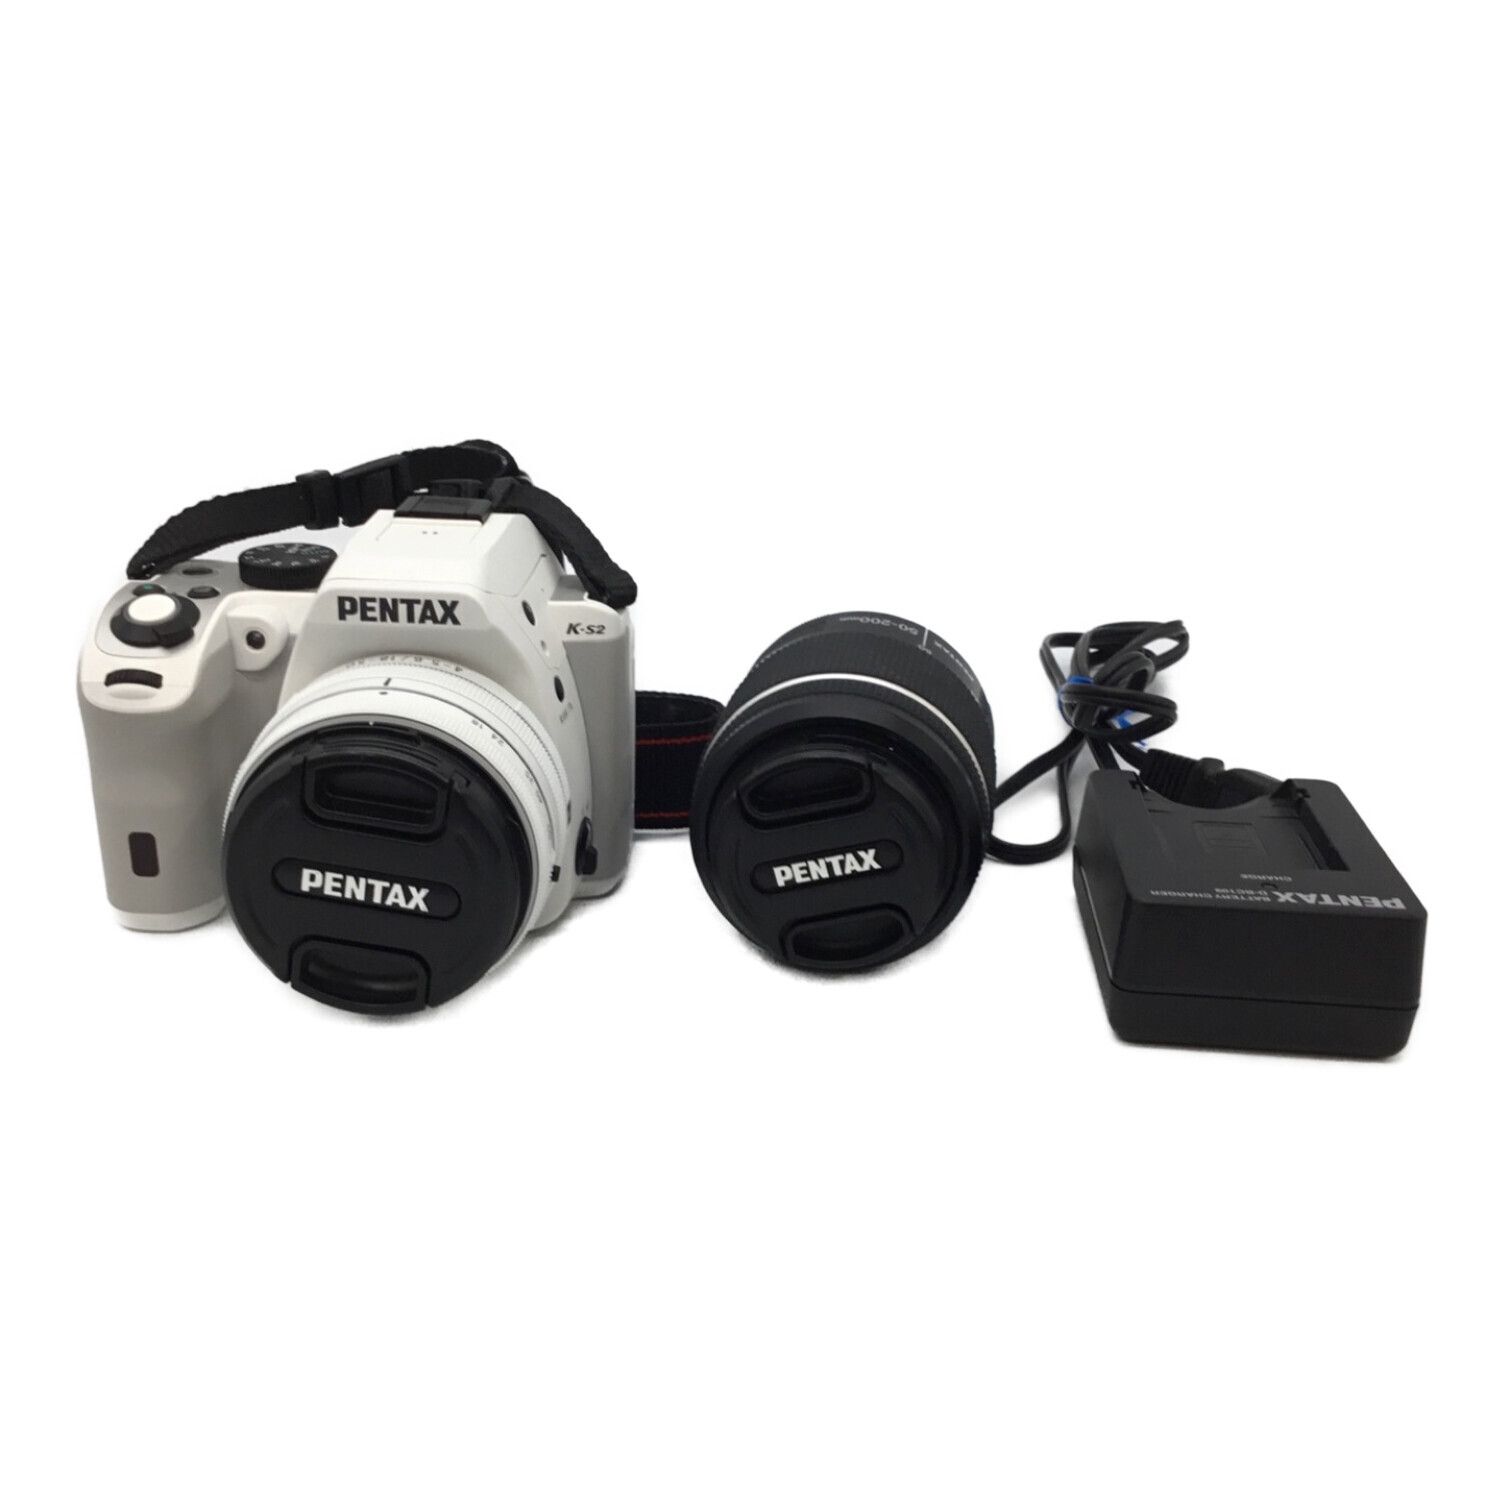 PENTAX (ペンタックス) デジタル一眼レフカメラ K-S2 専用電池